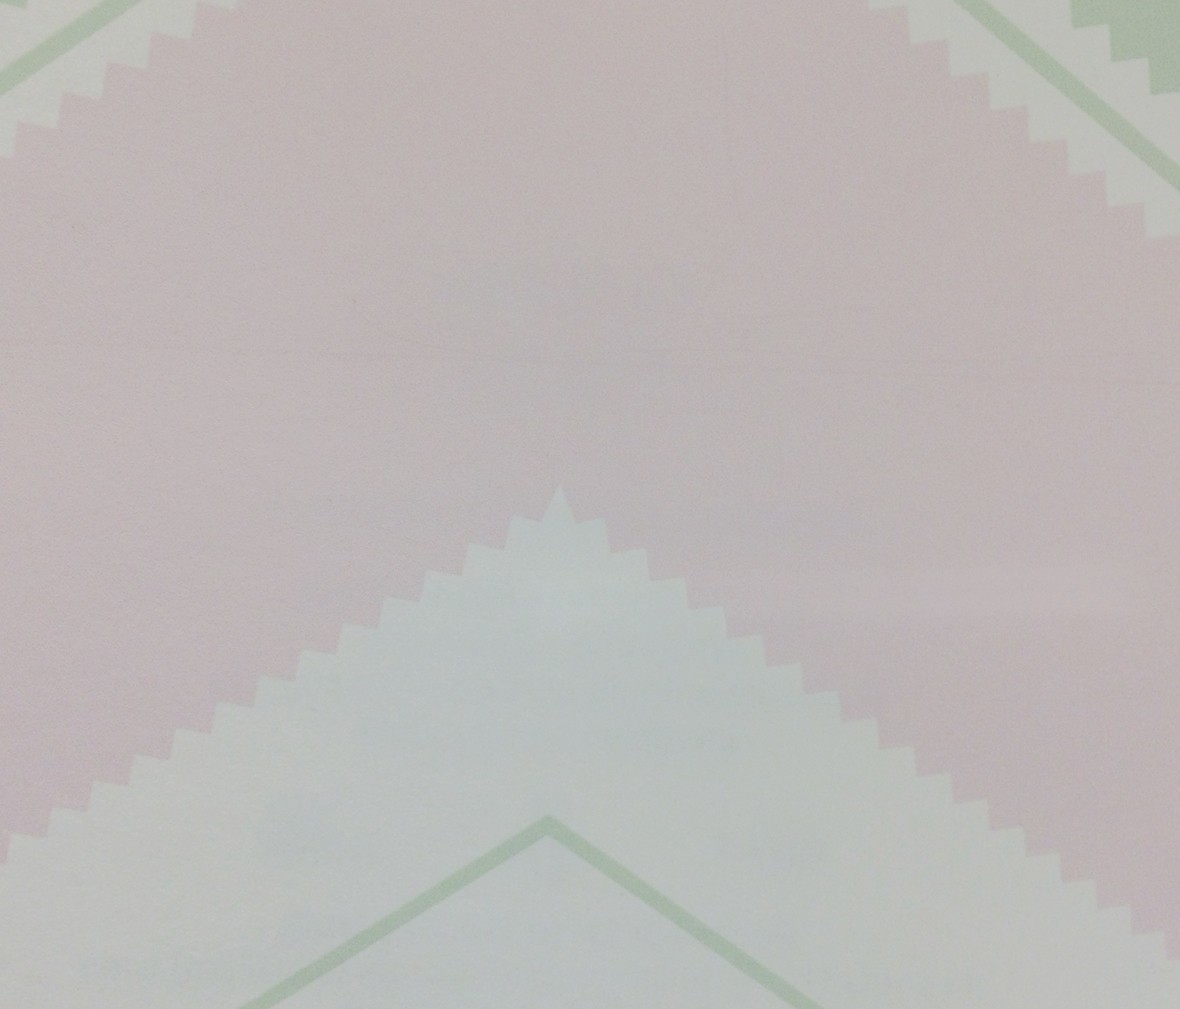 格莱美壁纸 梦想乐园系列 KJ51204型号进口环保纯纸墙纸 细节展示